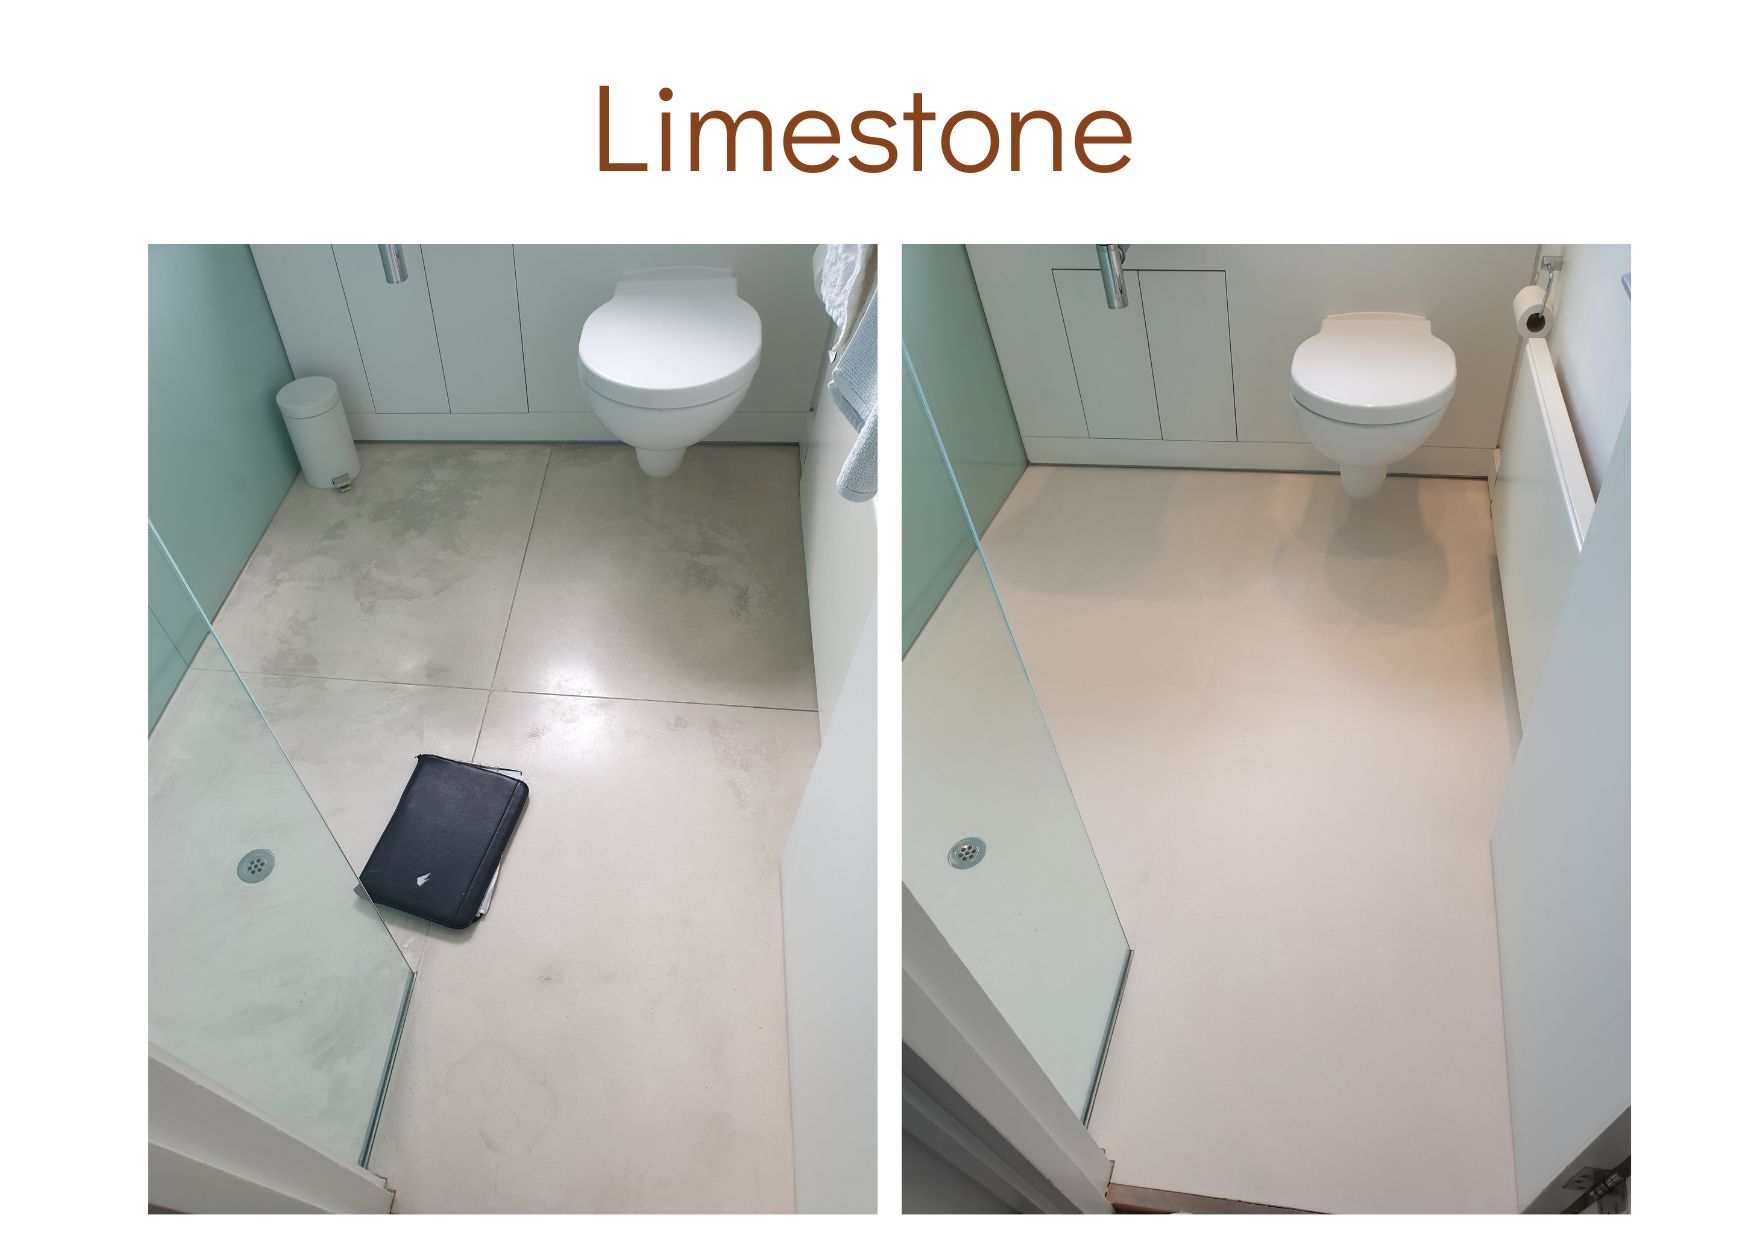 Limestone cleaned